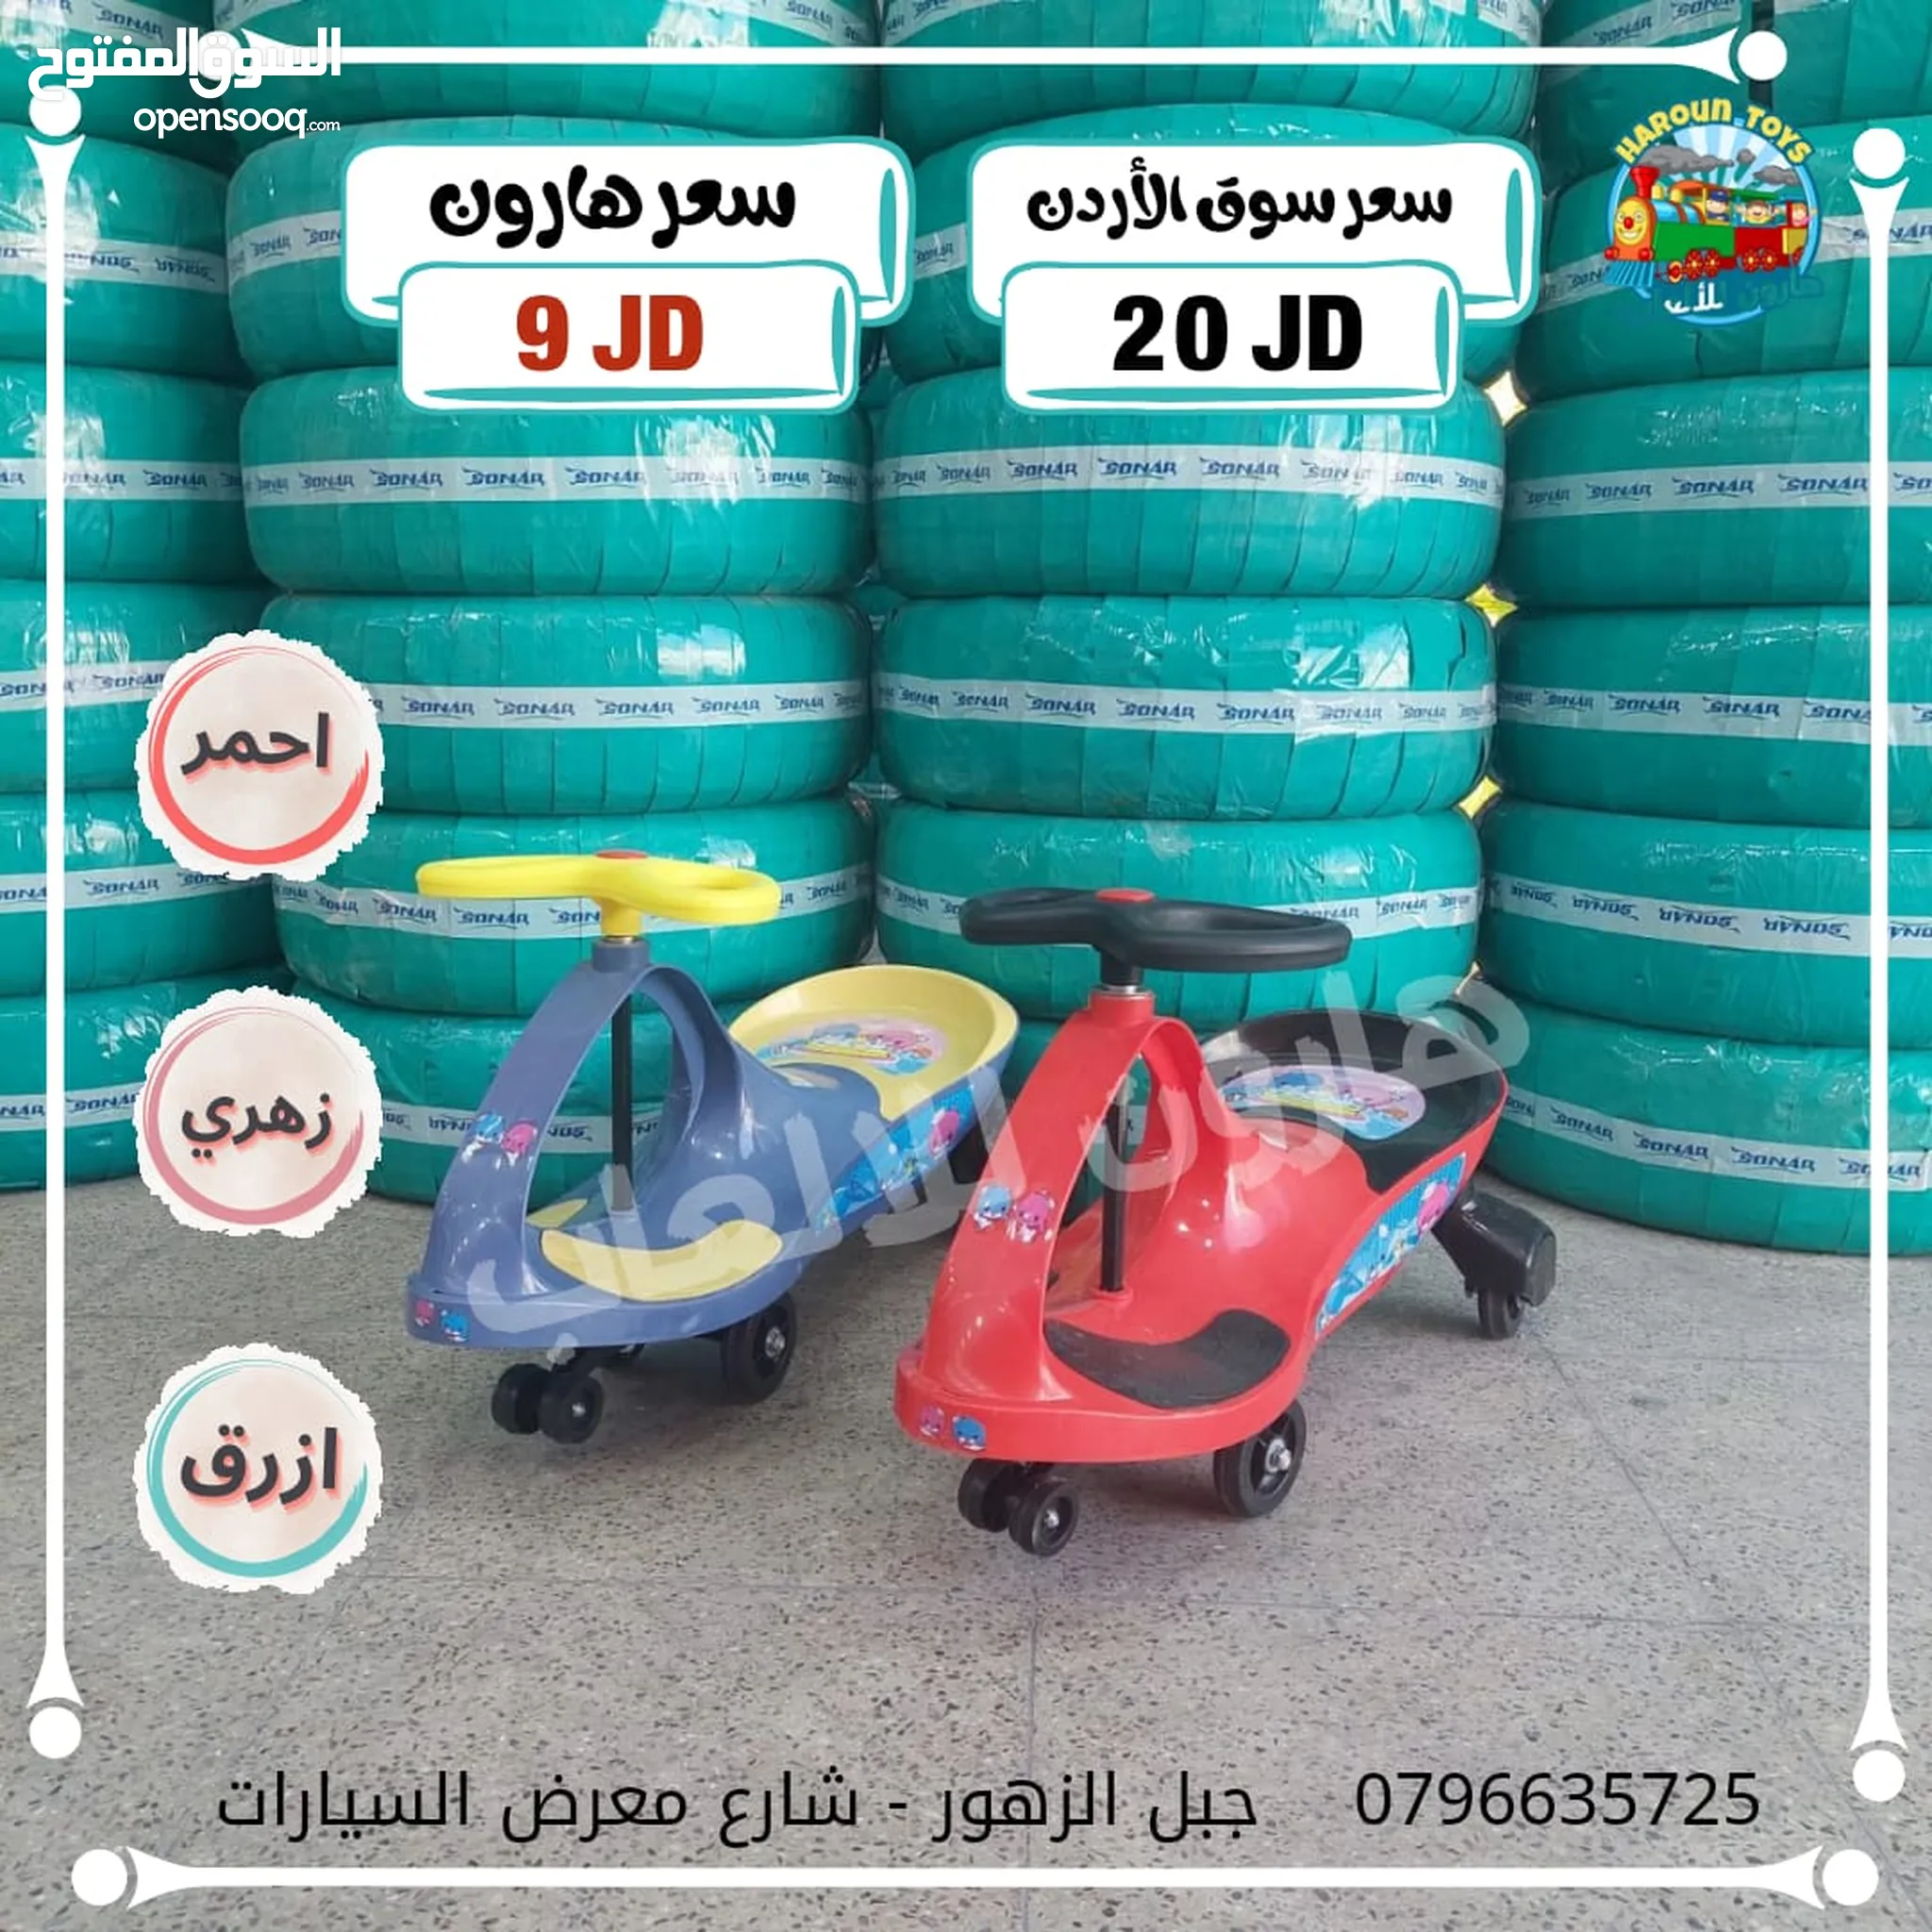 العاب اطفال للبيع : خيم اطفال : العاب مطبخ : ارخص الاسعار في عمان | السوق  المفتوح